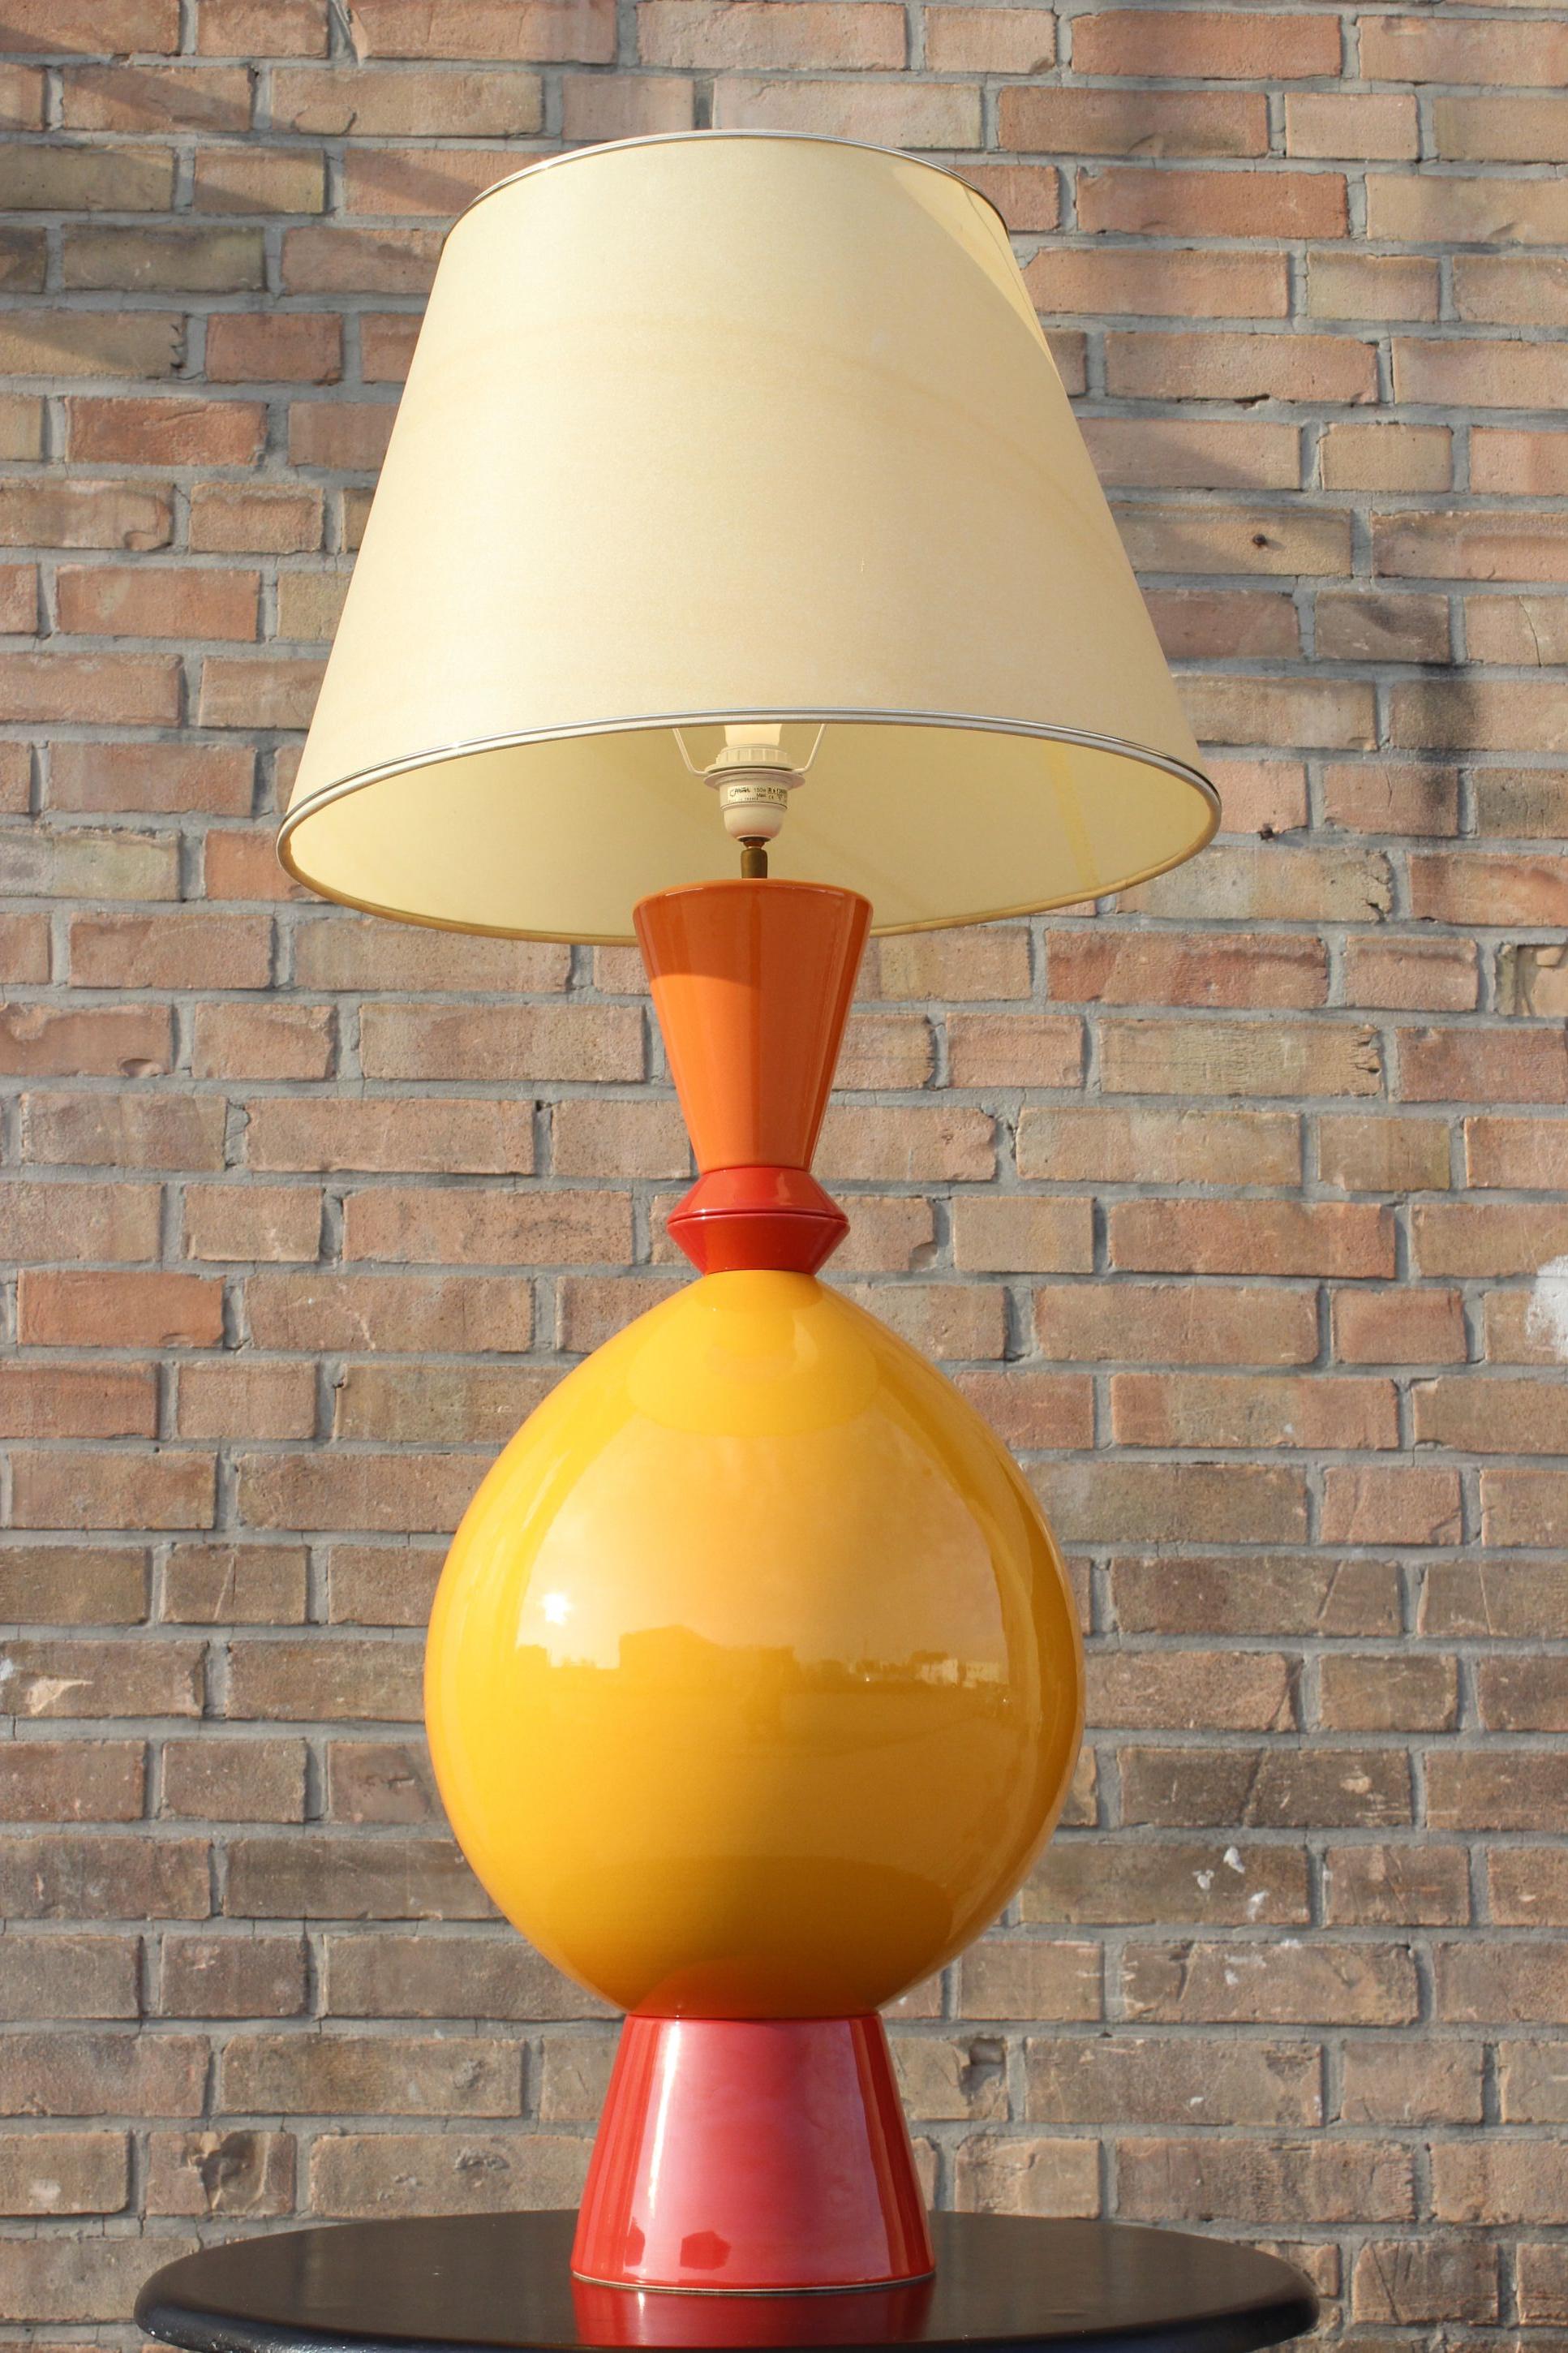 Grande lampe en céramique de Lampes D'Albret, société sœur de Drimmer, réputée pour ses productions post-modernistes, principalement en céramique émaillée. La lampe a été produite au début des années 1990. 

Le grand corps ressemble à un totem,